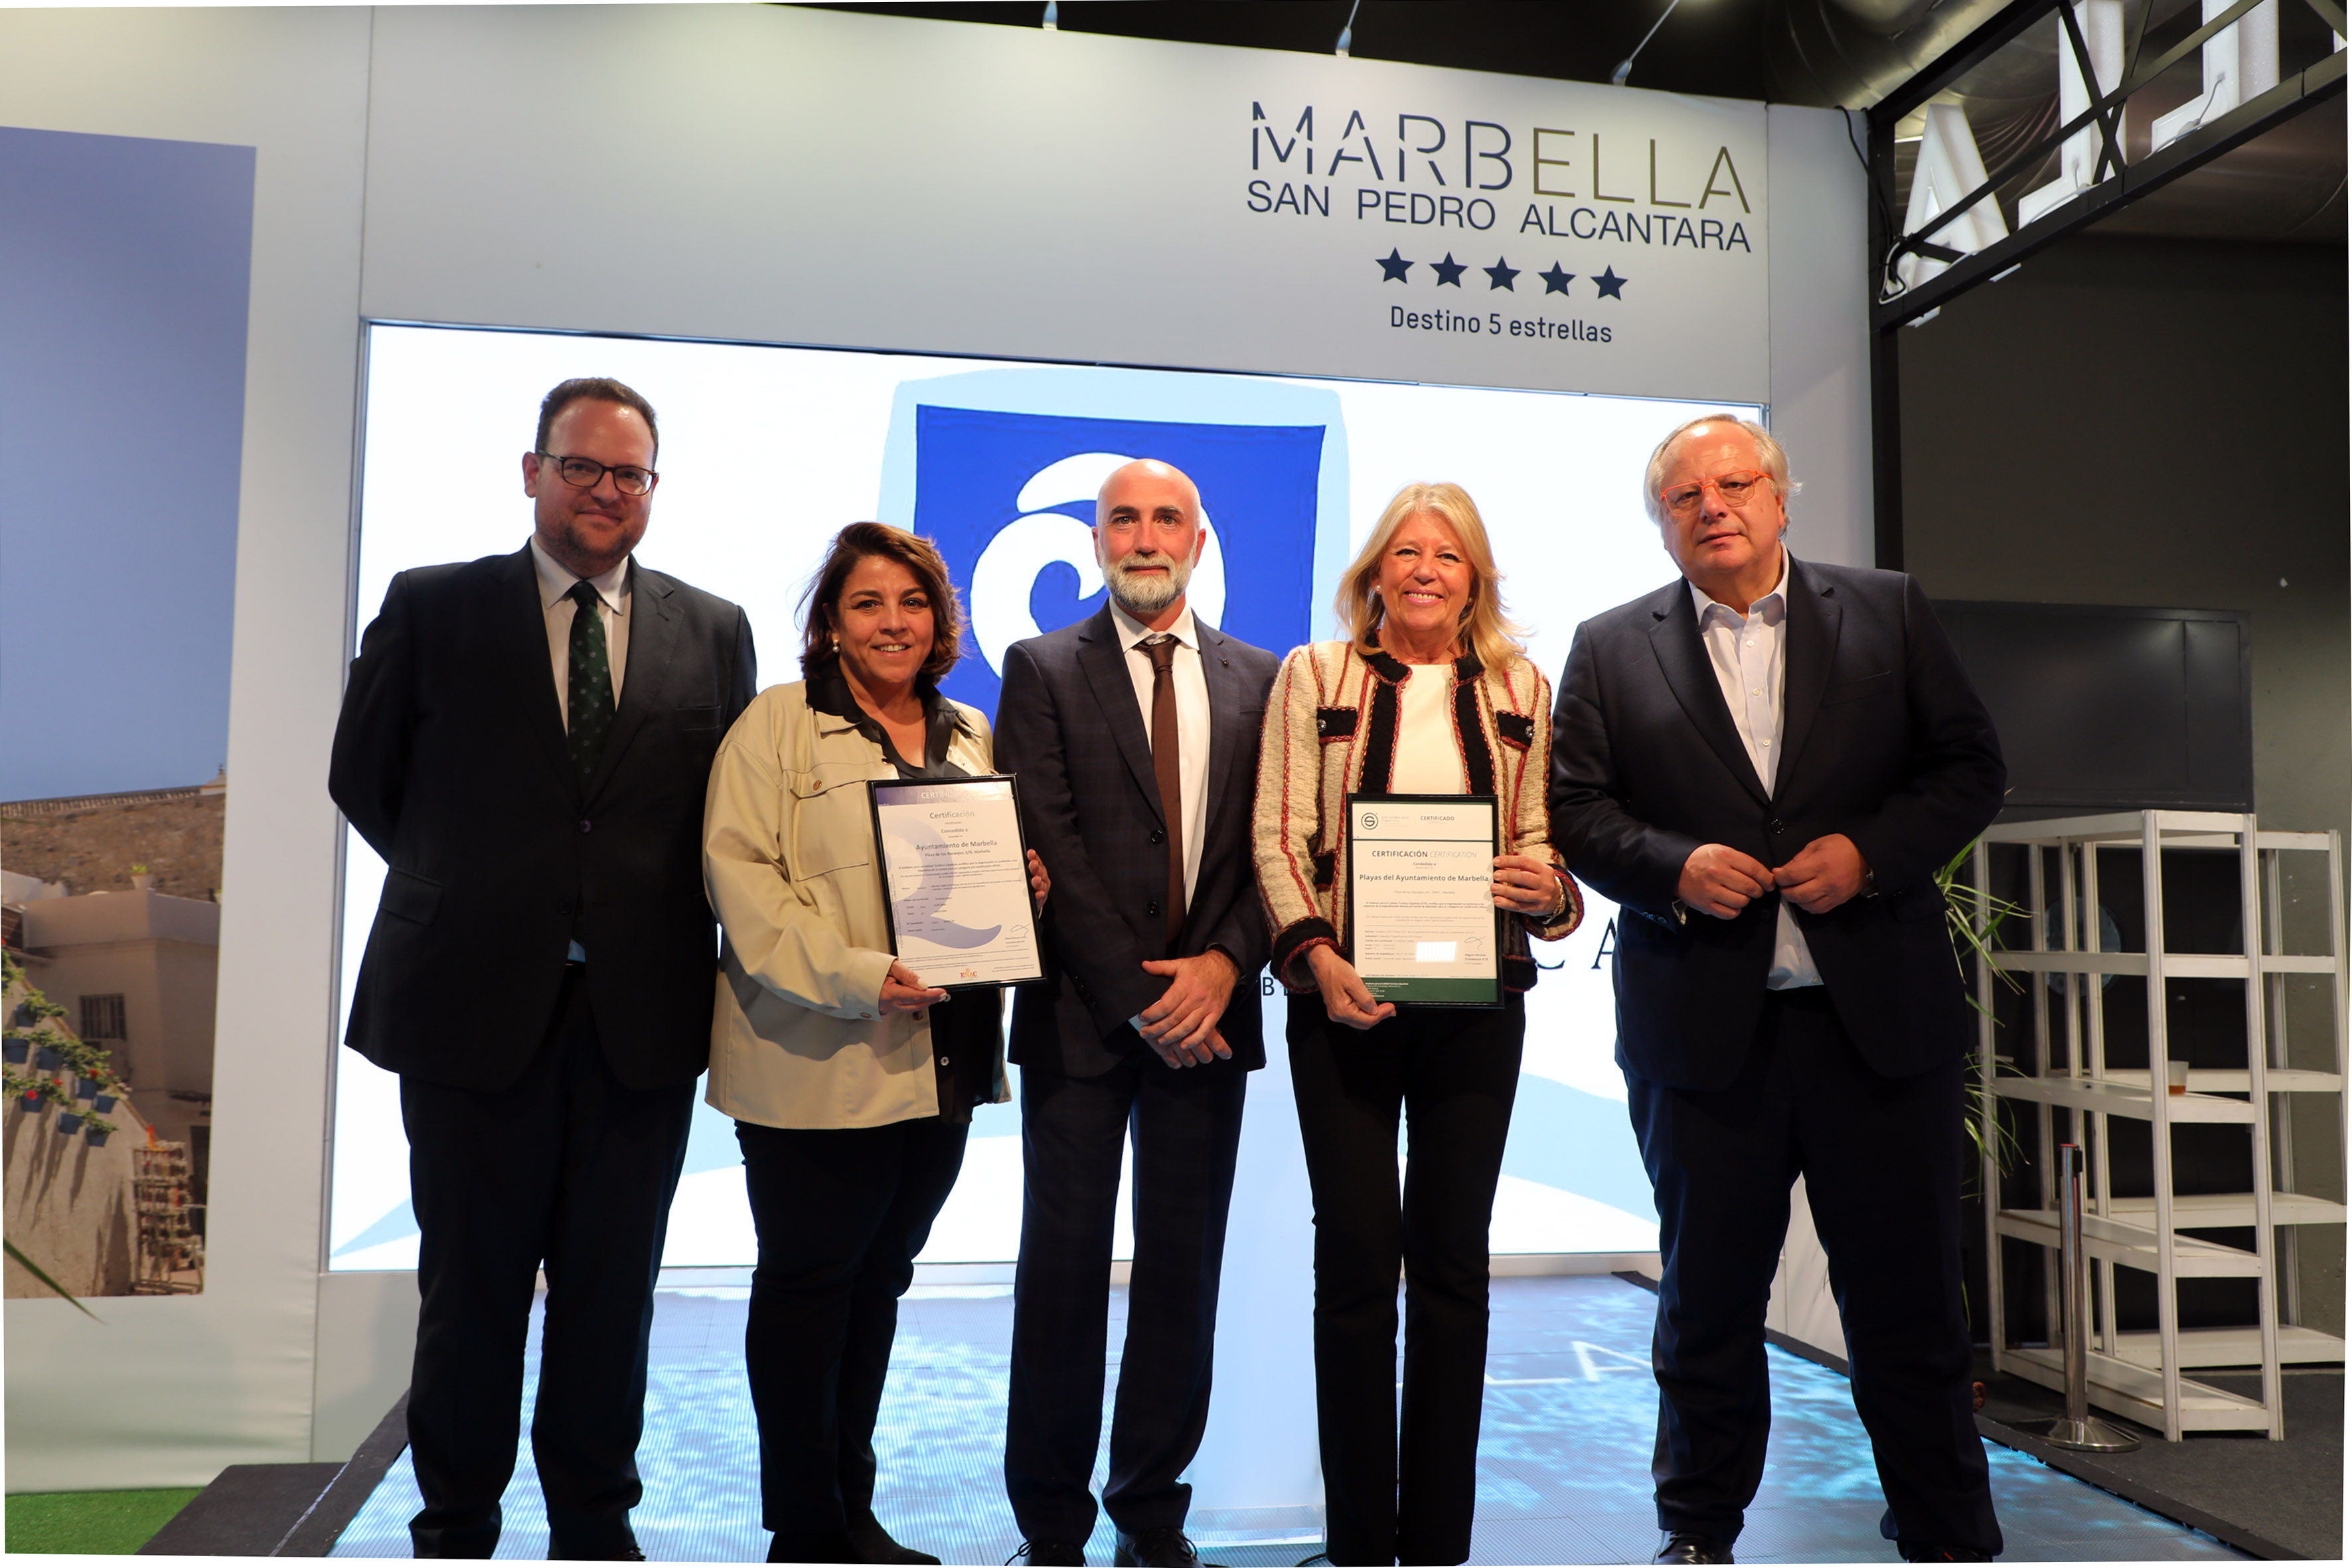 La alcaldesa destaca que Marbella se presenta en FITUR “con una apuesta ligada a la calidad, donde la ciudad es un destino muy competitivo y cuenta con un bagaje turístico que la sitúa como referente”